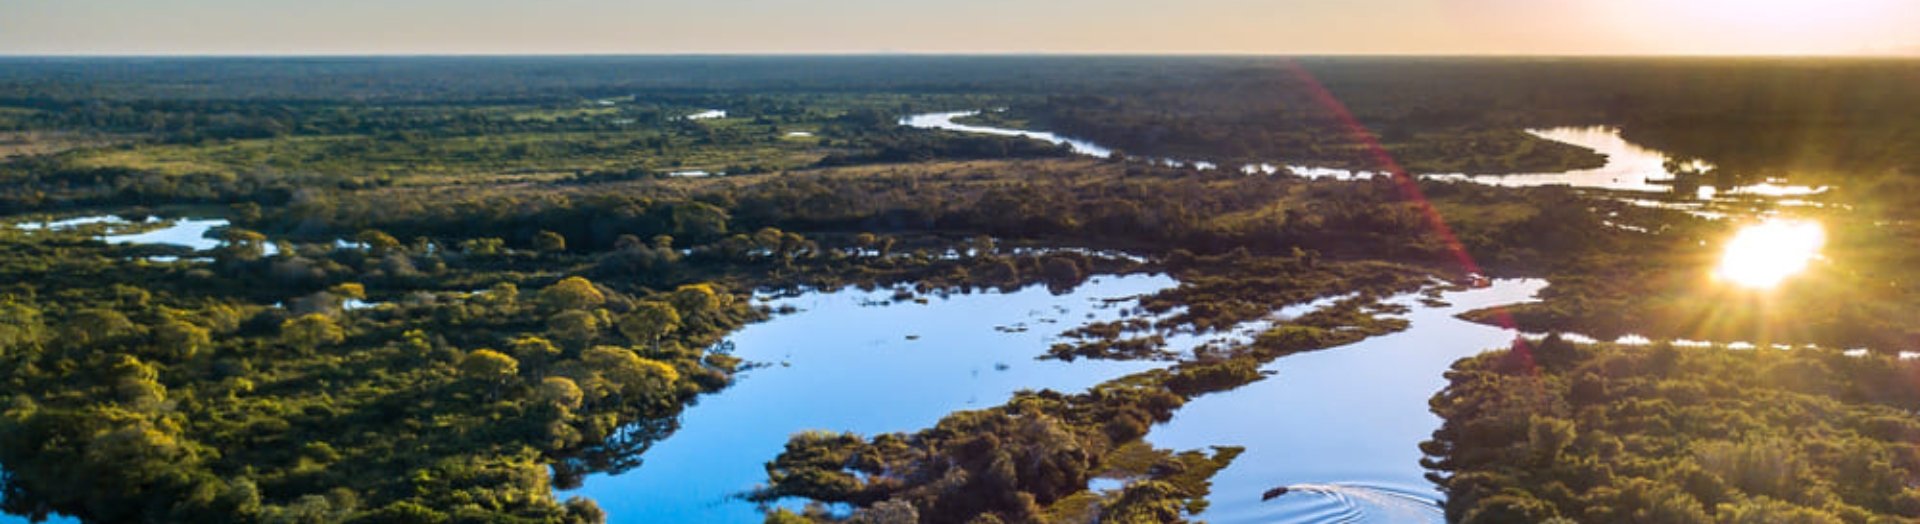 Pantanal do Mato Grosso do Sul